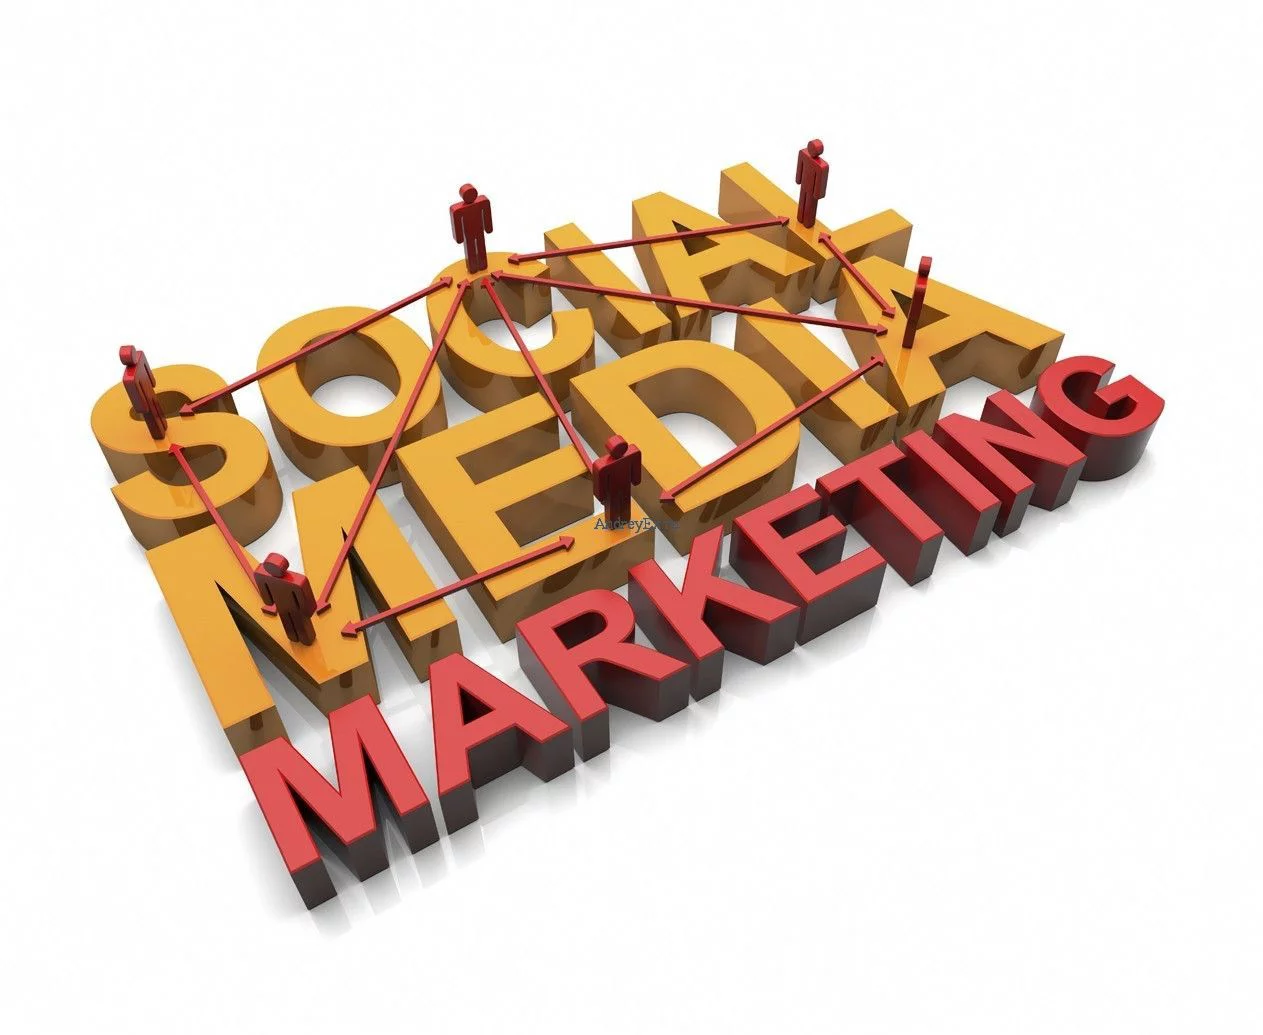 Social media marketing (SMM)